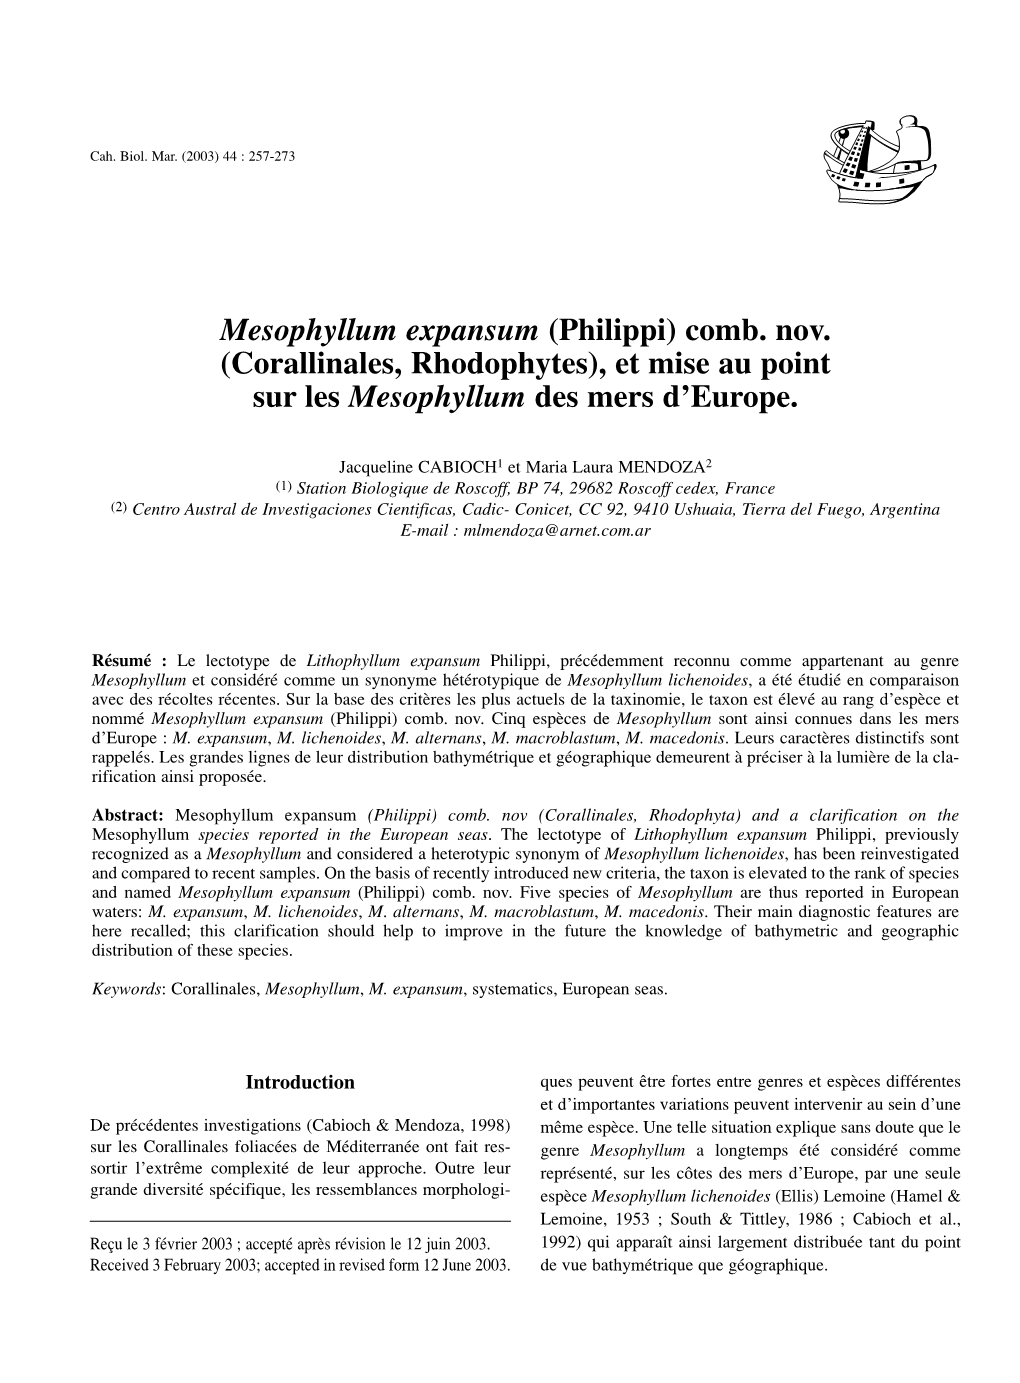 Mesophyllum Expansum (Philippi) Comb. Nov. (Corallinales, Rhodophytes), Et Mise Au Point Sur Les Mesophyllum Des Mers D’Europe